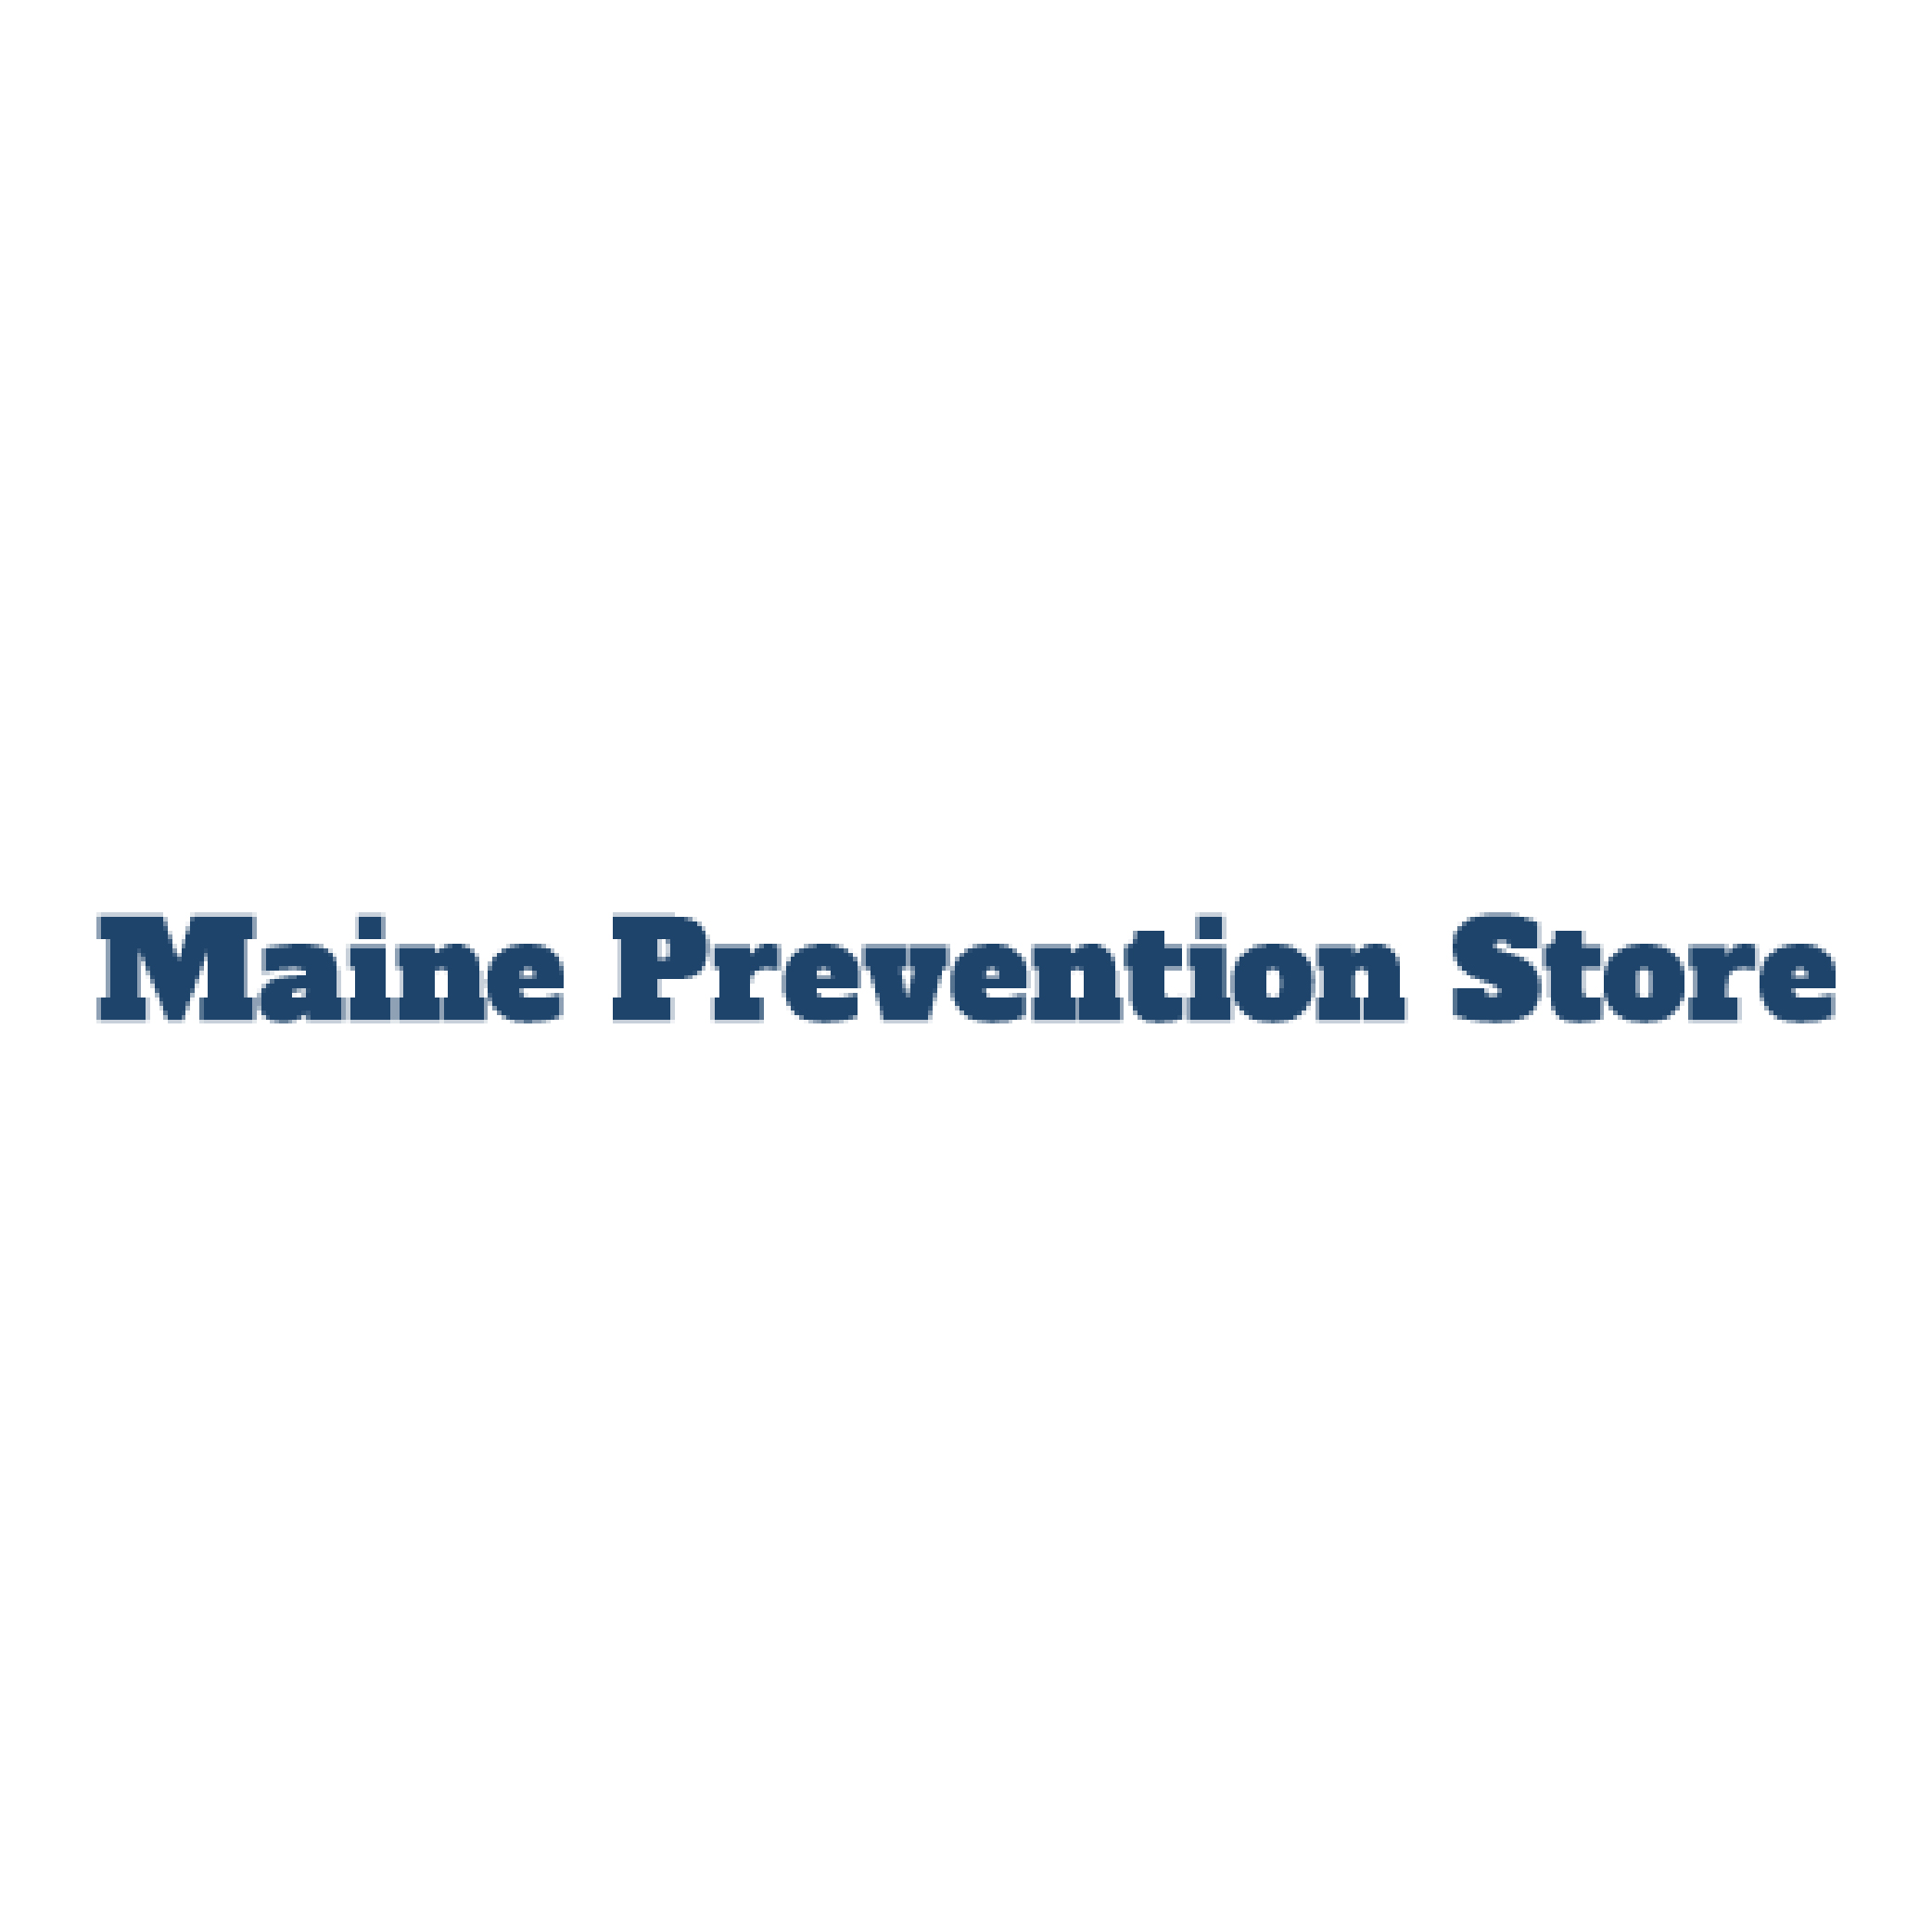 Logotipo de la tienda Maine Prevention